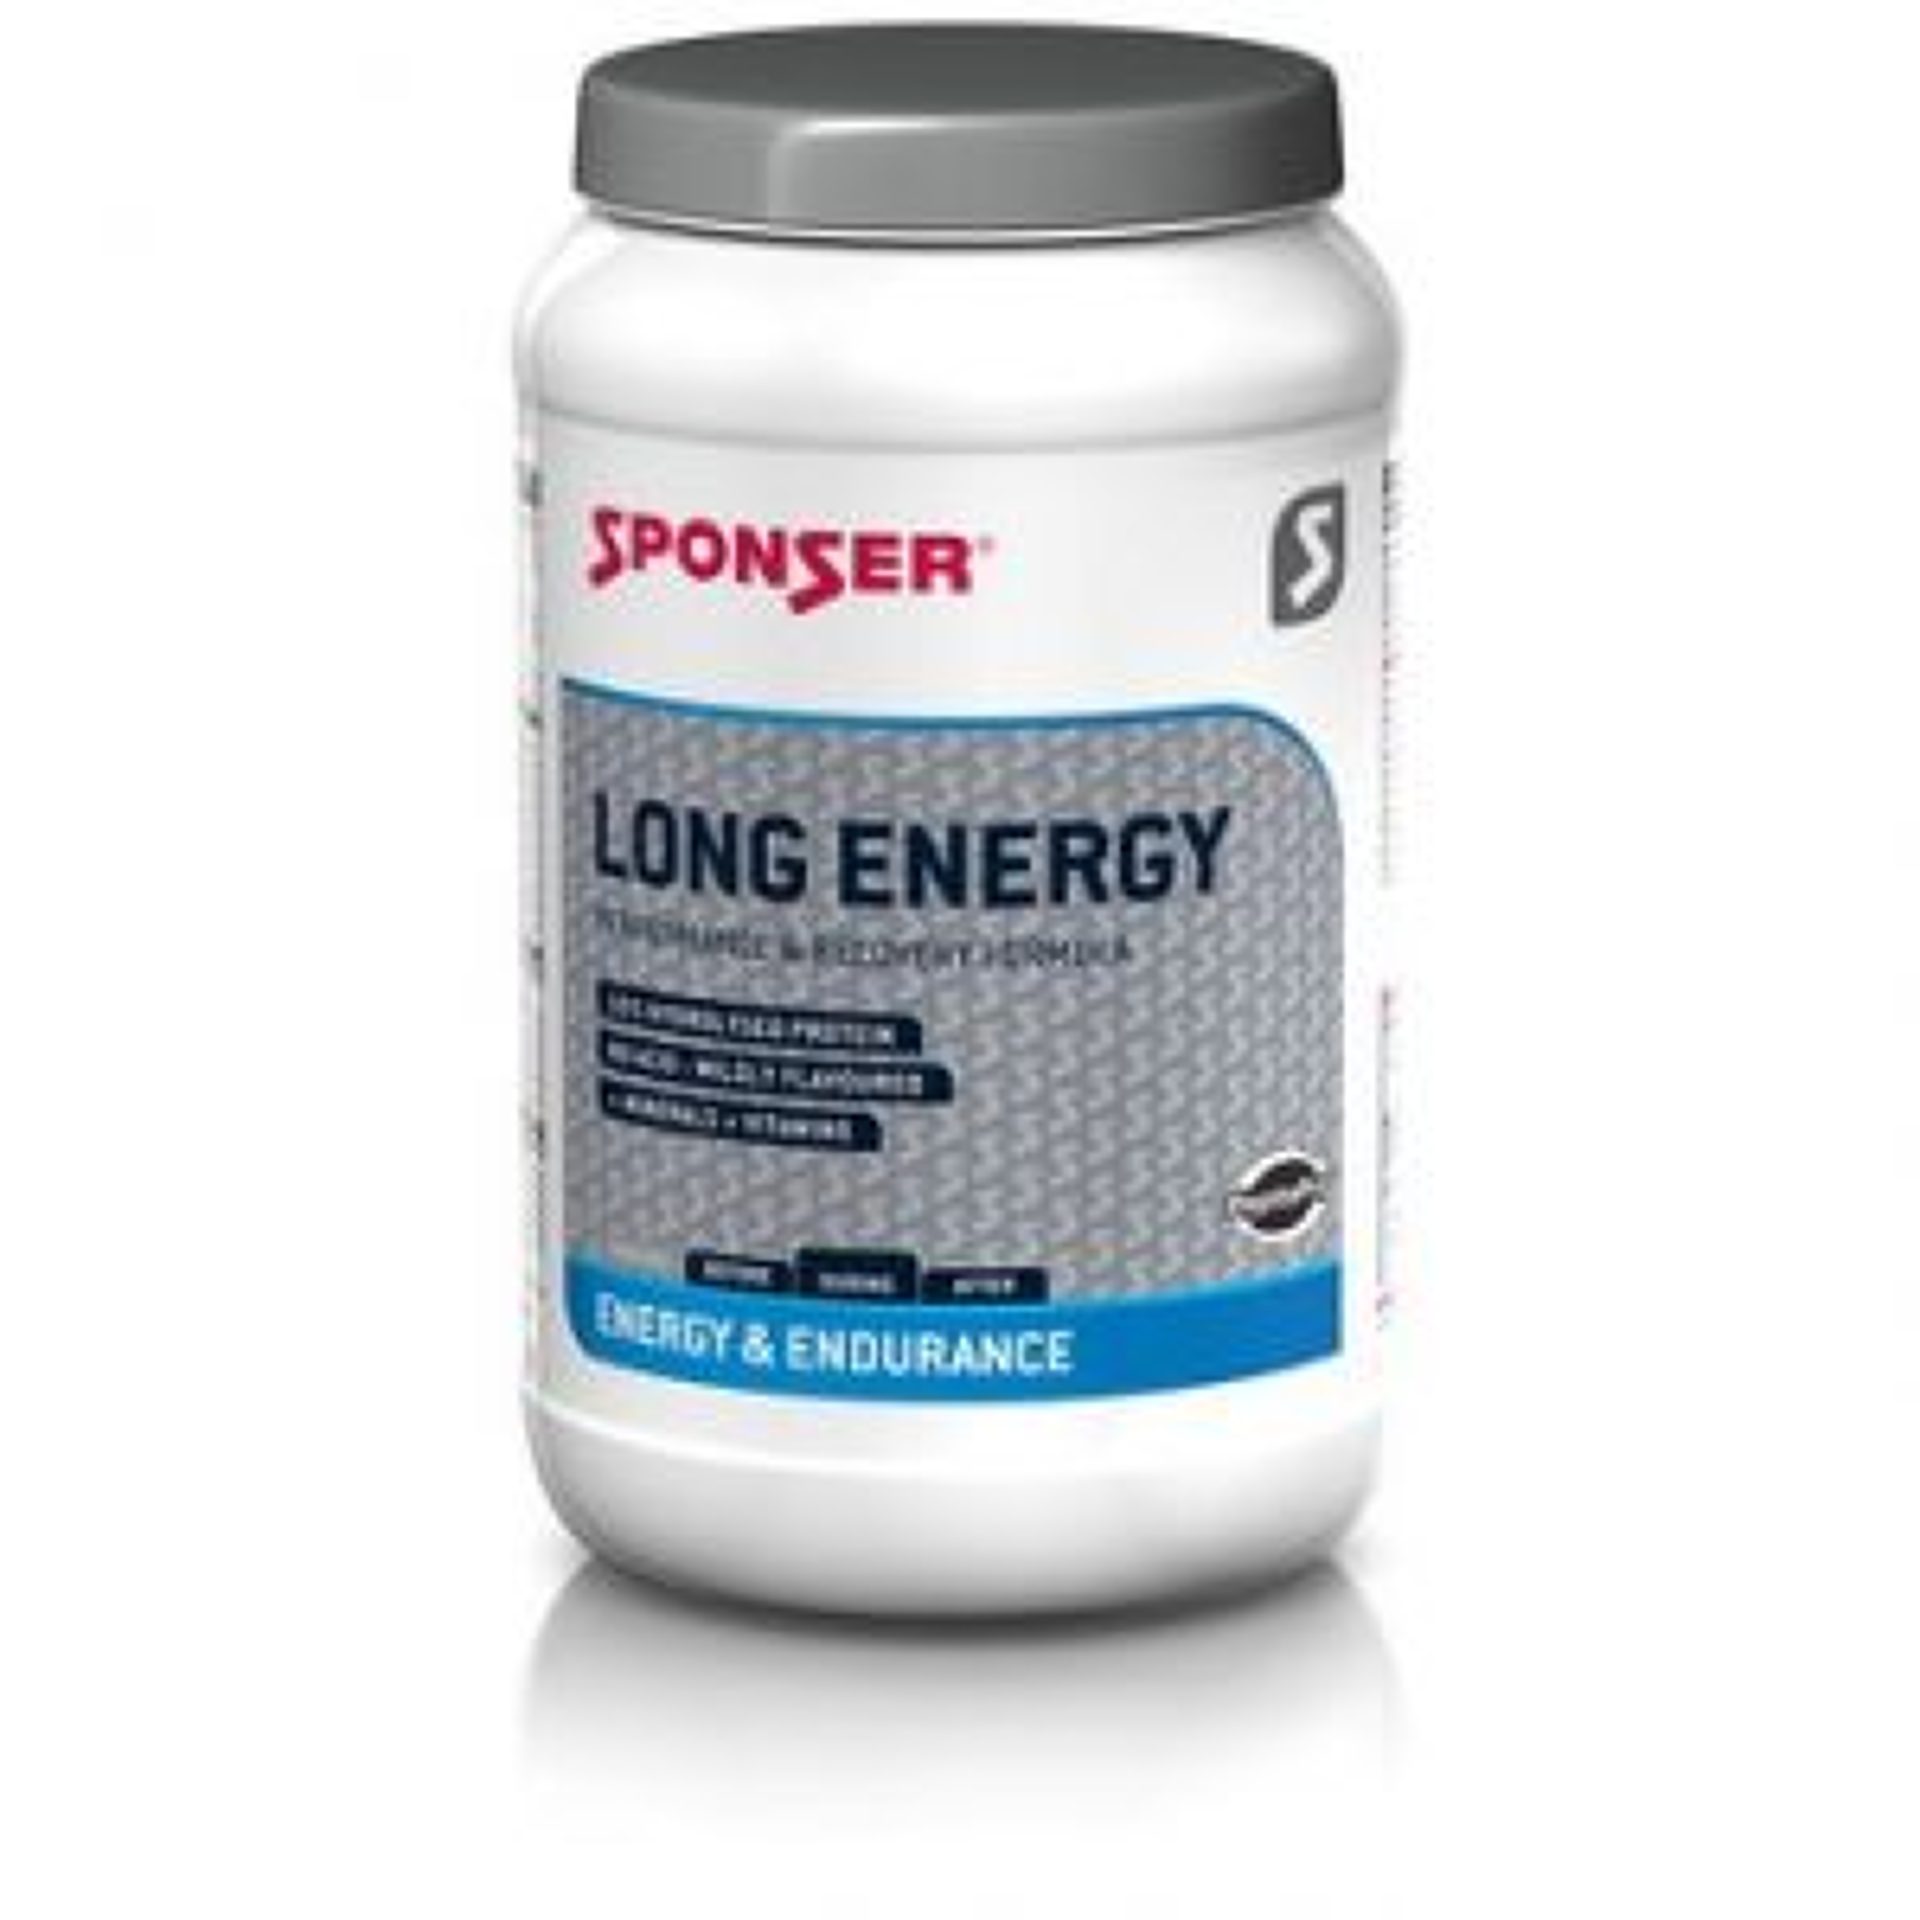 Sponser Long Energy 5% FruitMix 1200g